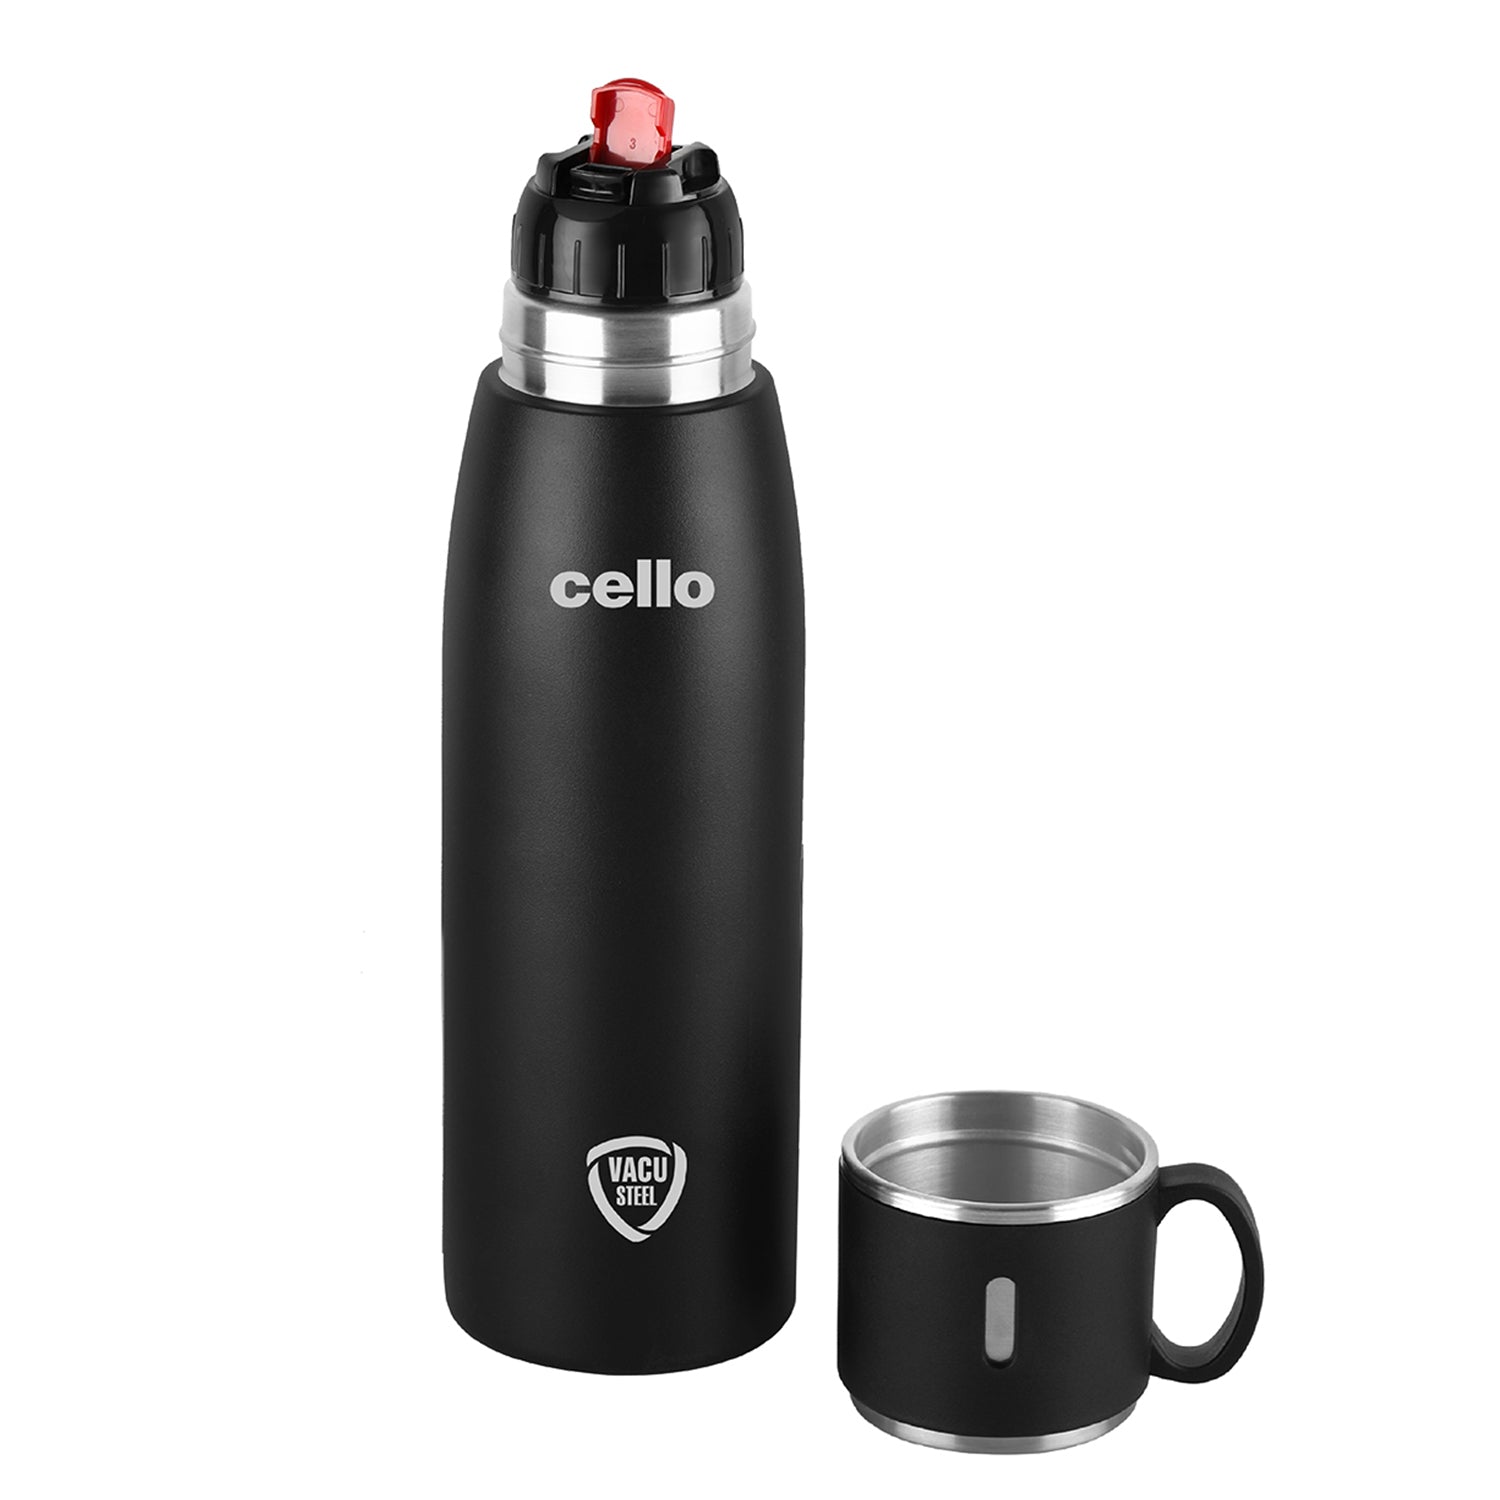 Duro Cup Style Flask, Vacusteel Water Bottle 500ml Black / 500ml